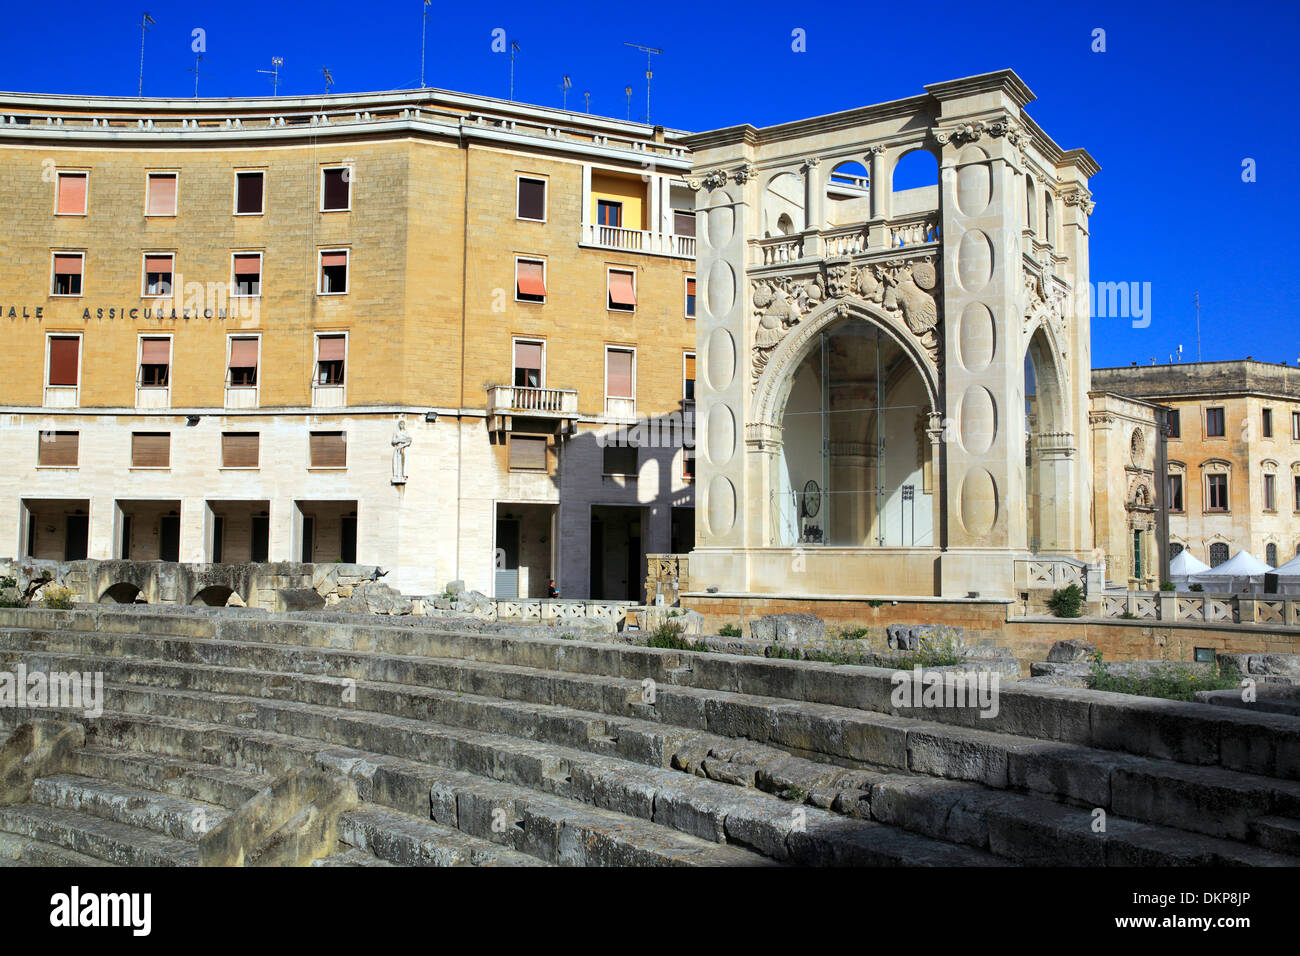 Roman theatre and INA Building, St. Oronzo square, Lecce, Apulia, Italy Stock Photo